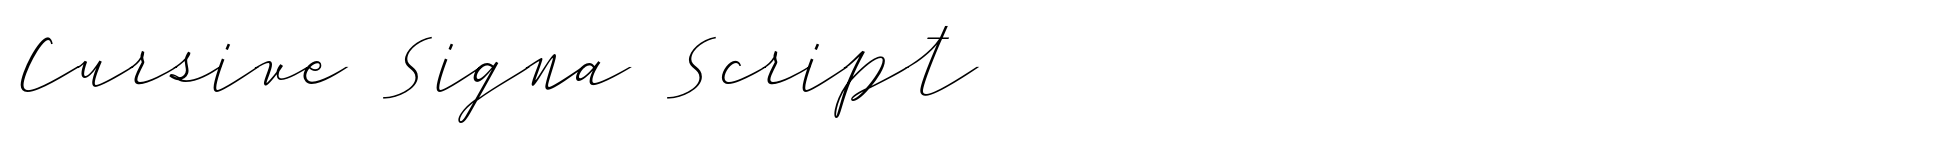 Cursive Signa Script